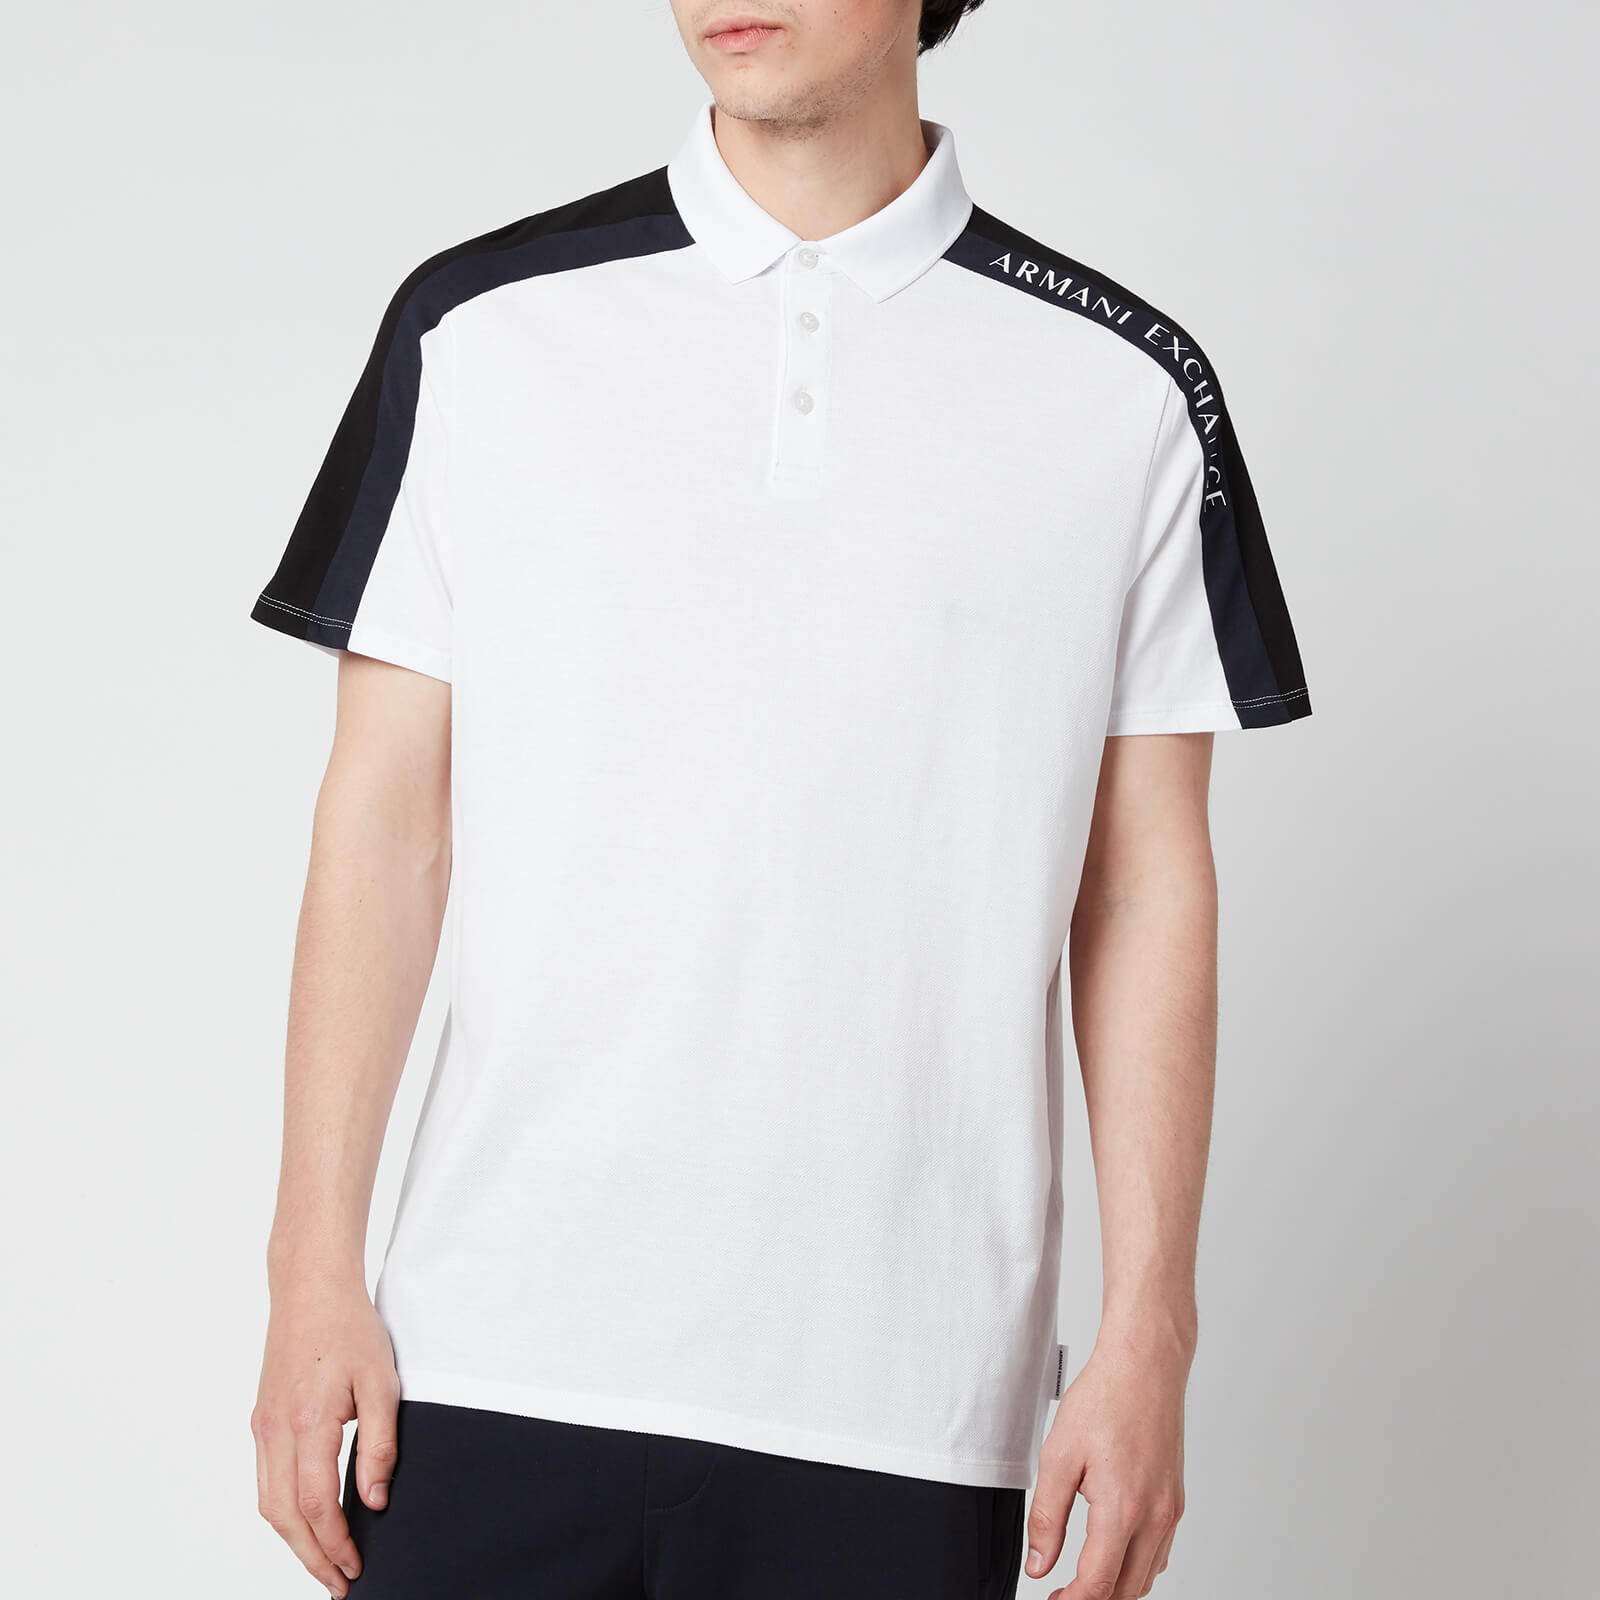 Armani Exchange Men's Sleeve Detail Polo Shirt - White/Black/Navy - S